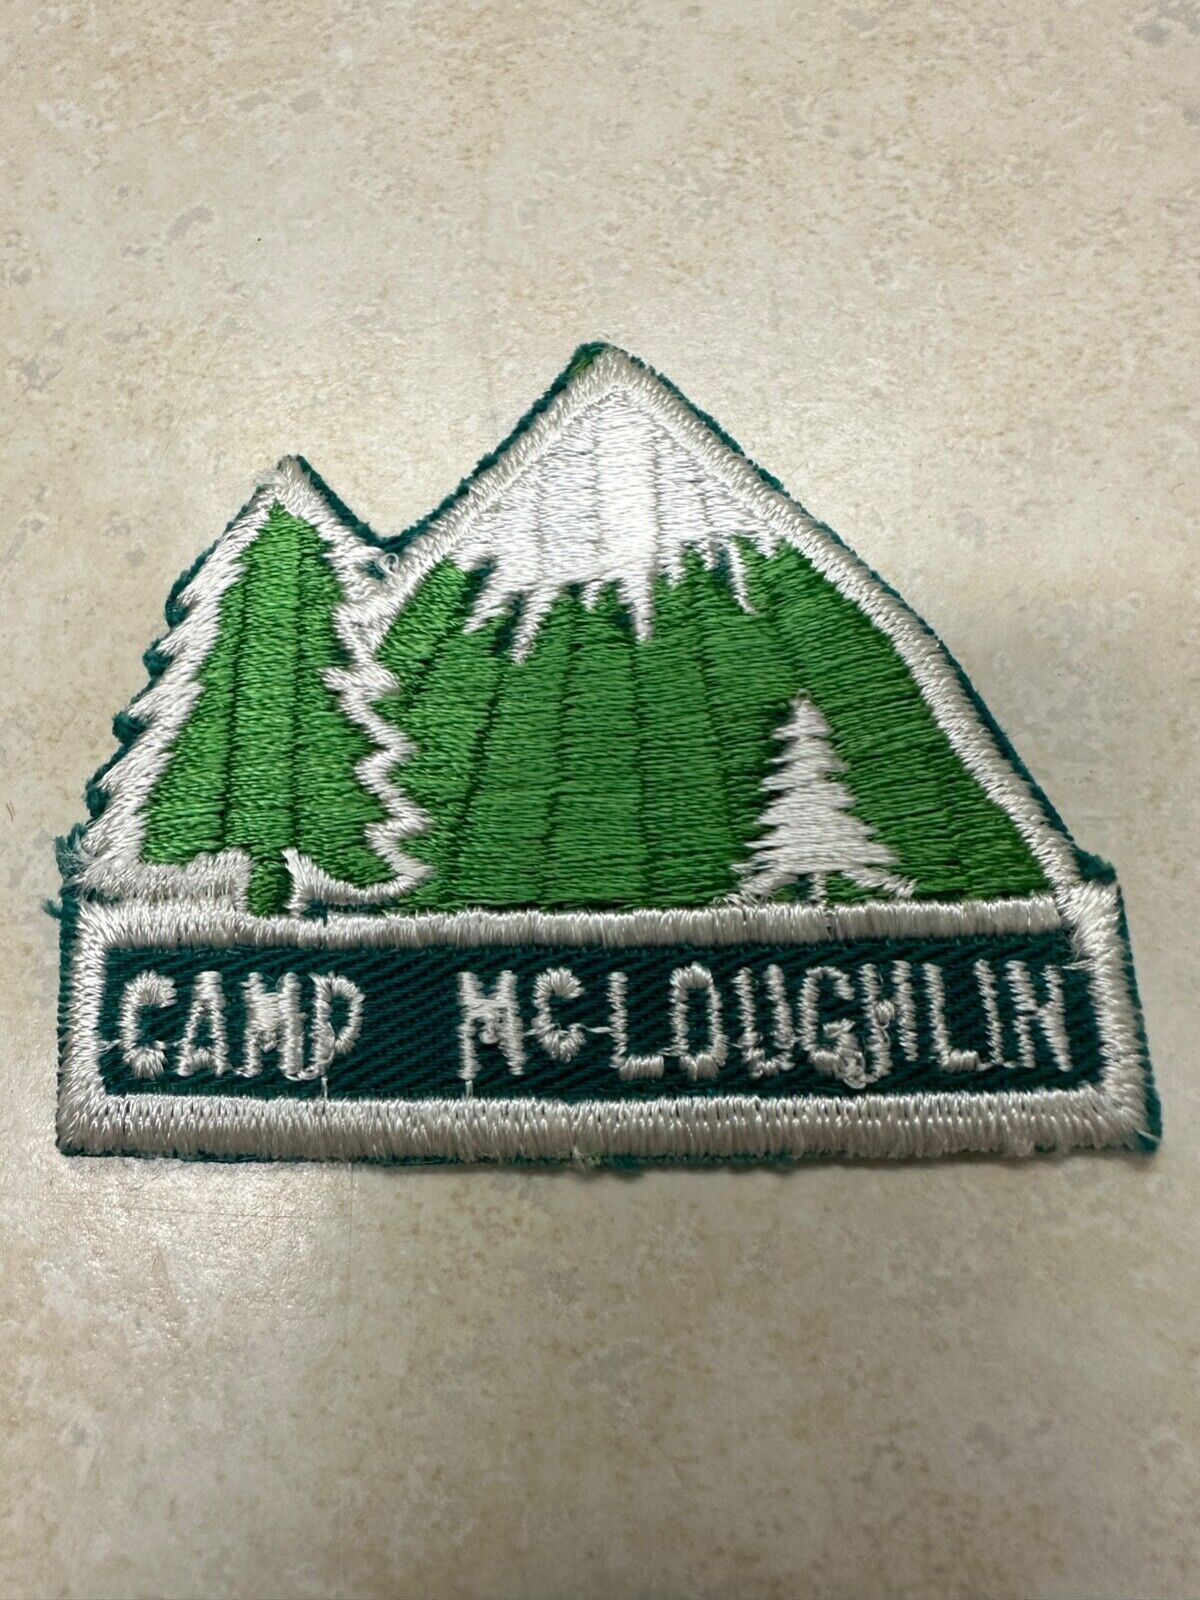 Vintage Boy Scout Camp McLoughlin Cut Edge Camp Patch